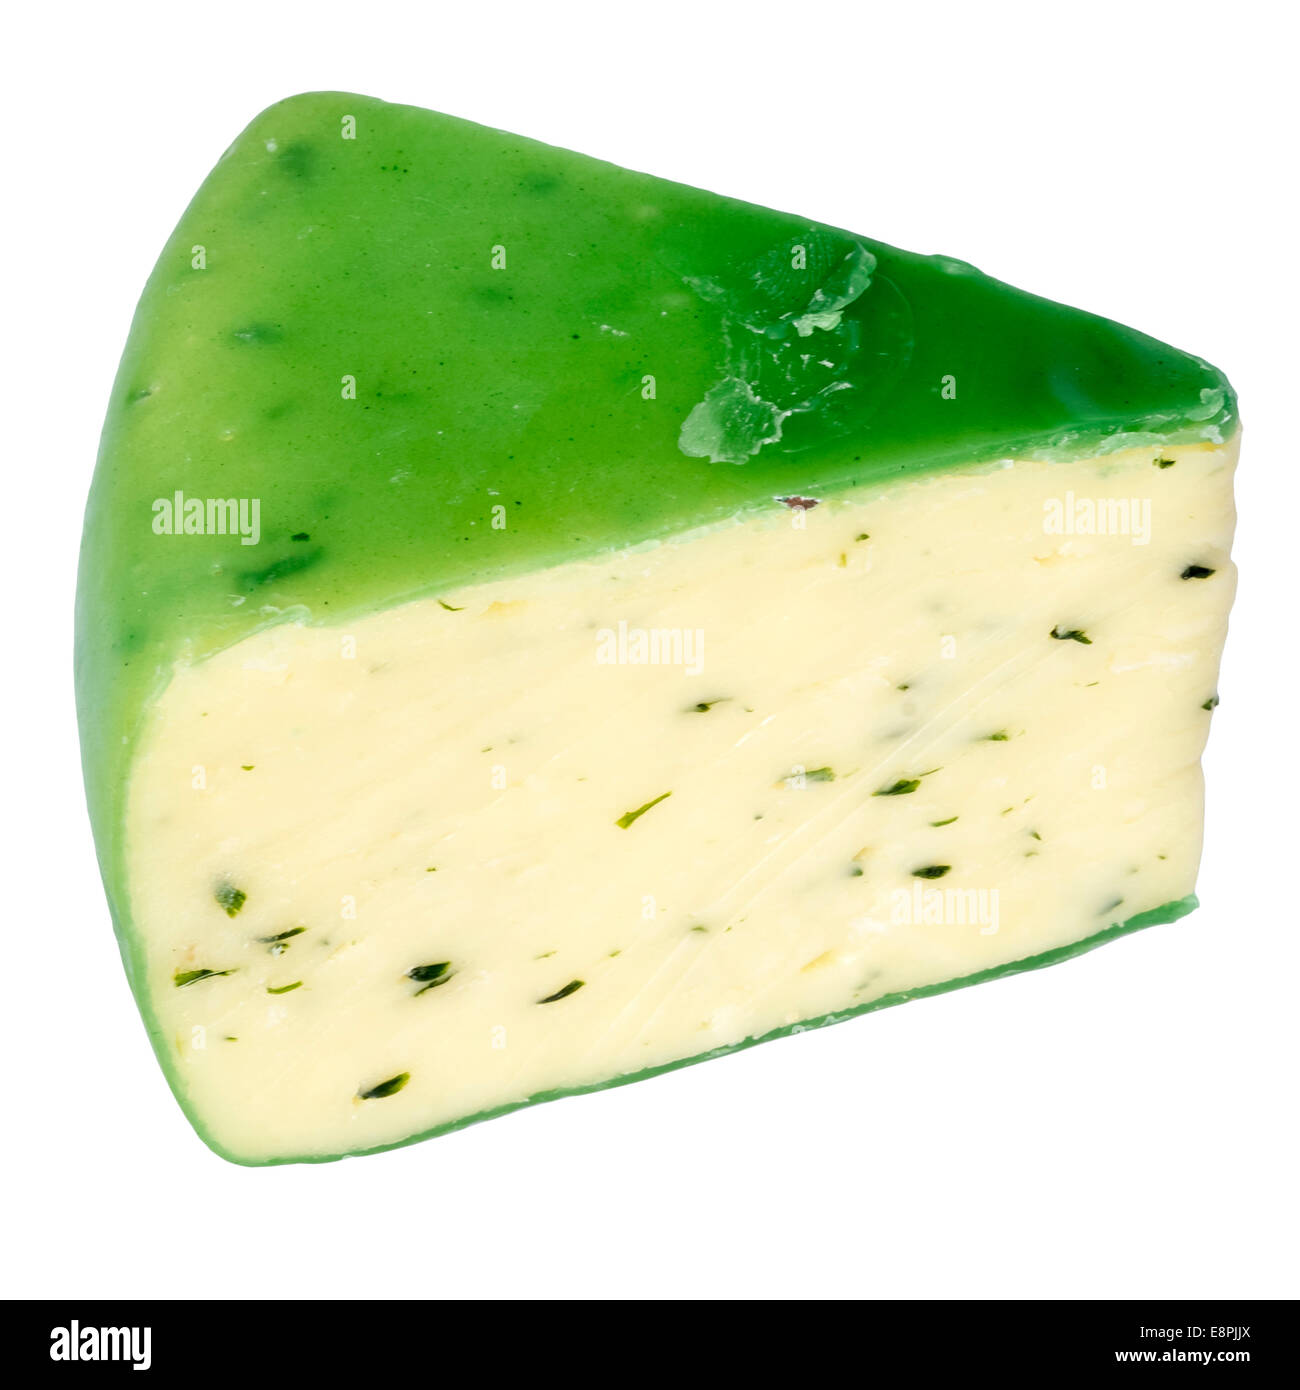 Keil von Cheddar-Käse & Schnittlauch, Ausschneiden oder isoliert auf einem weißen Hintergrund. Käse mit grünem Wachs versiegelt. Stockfoto